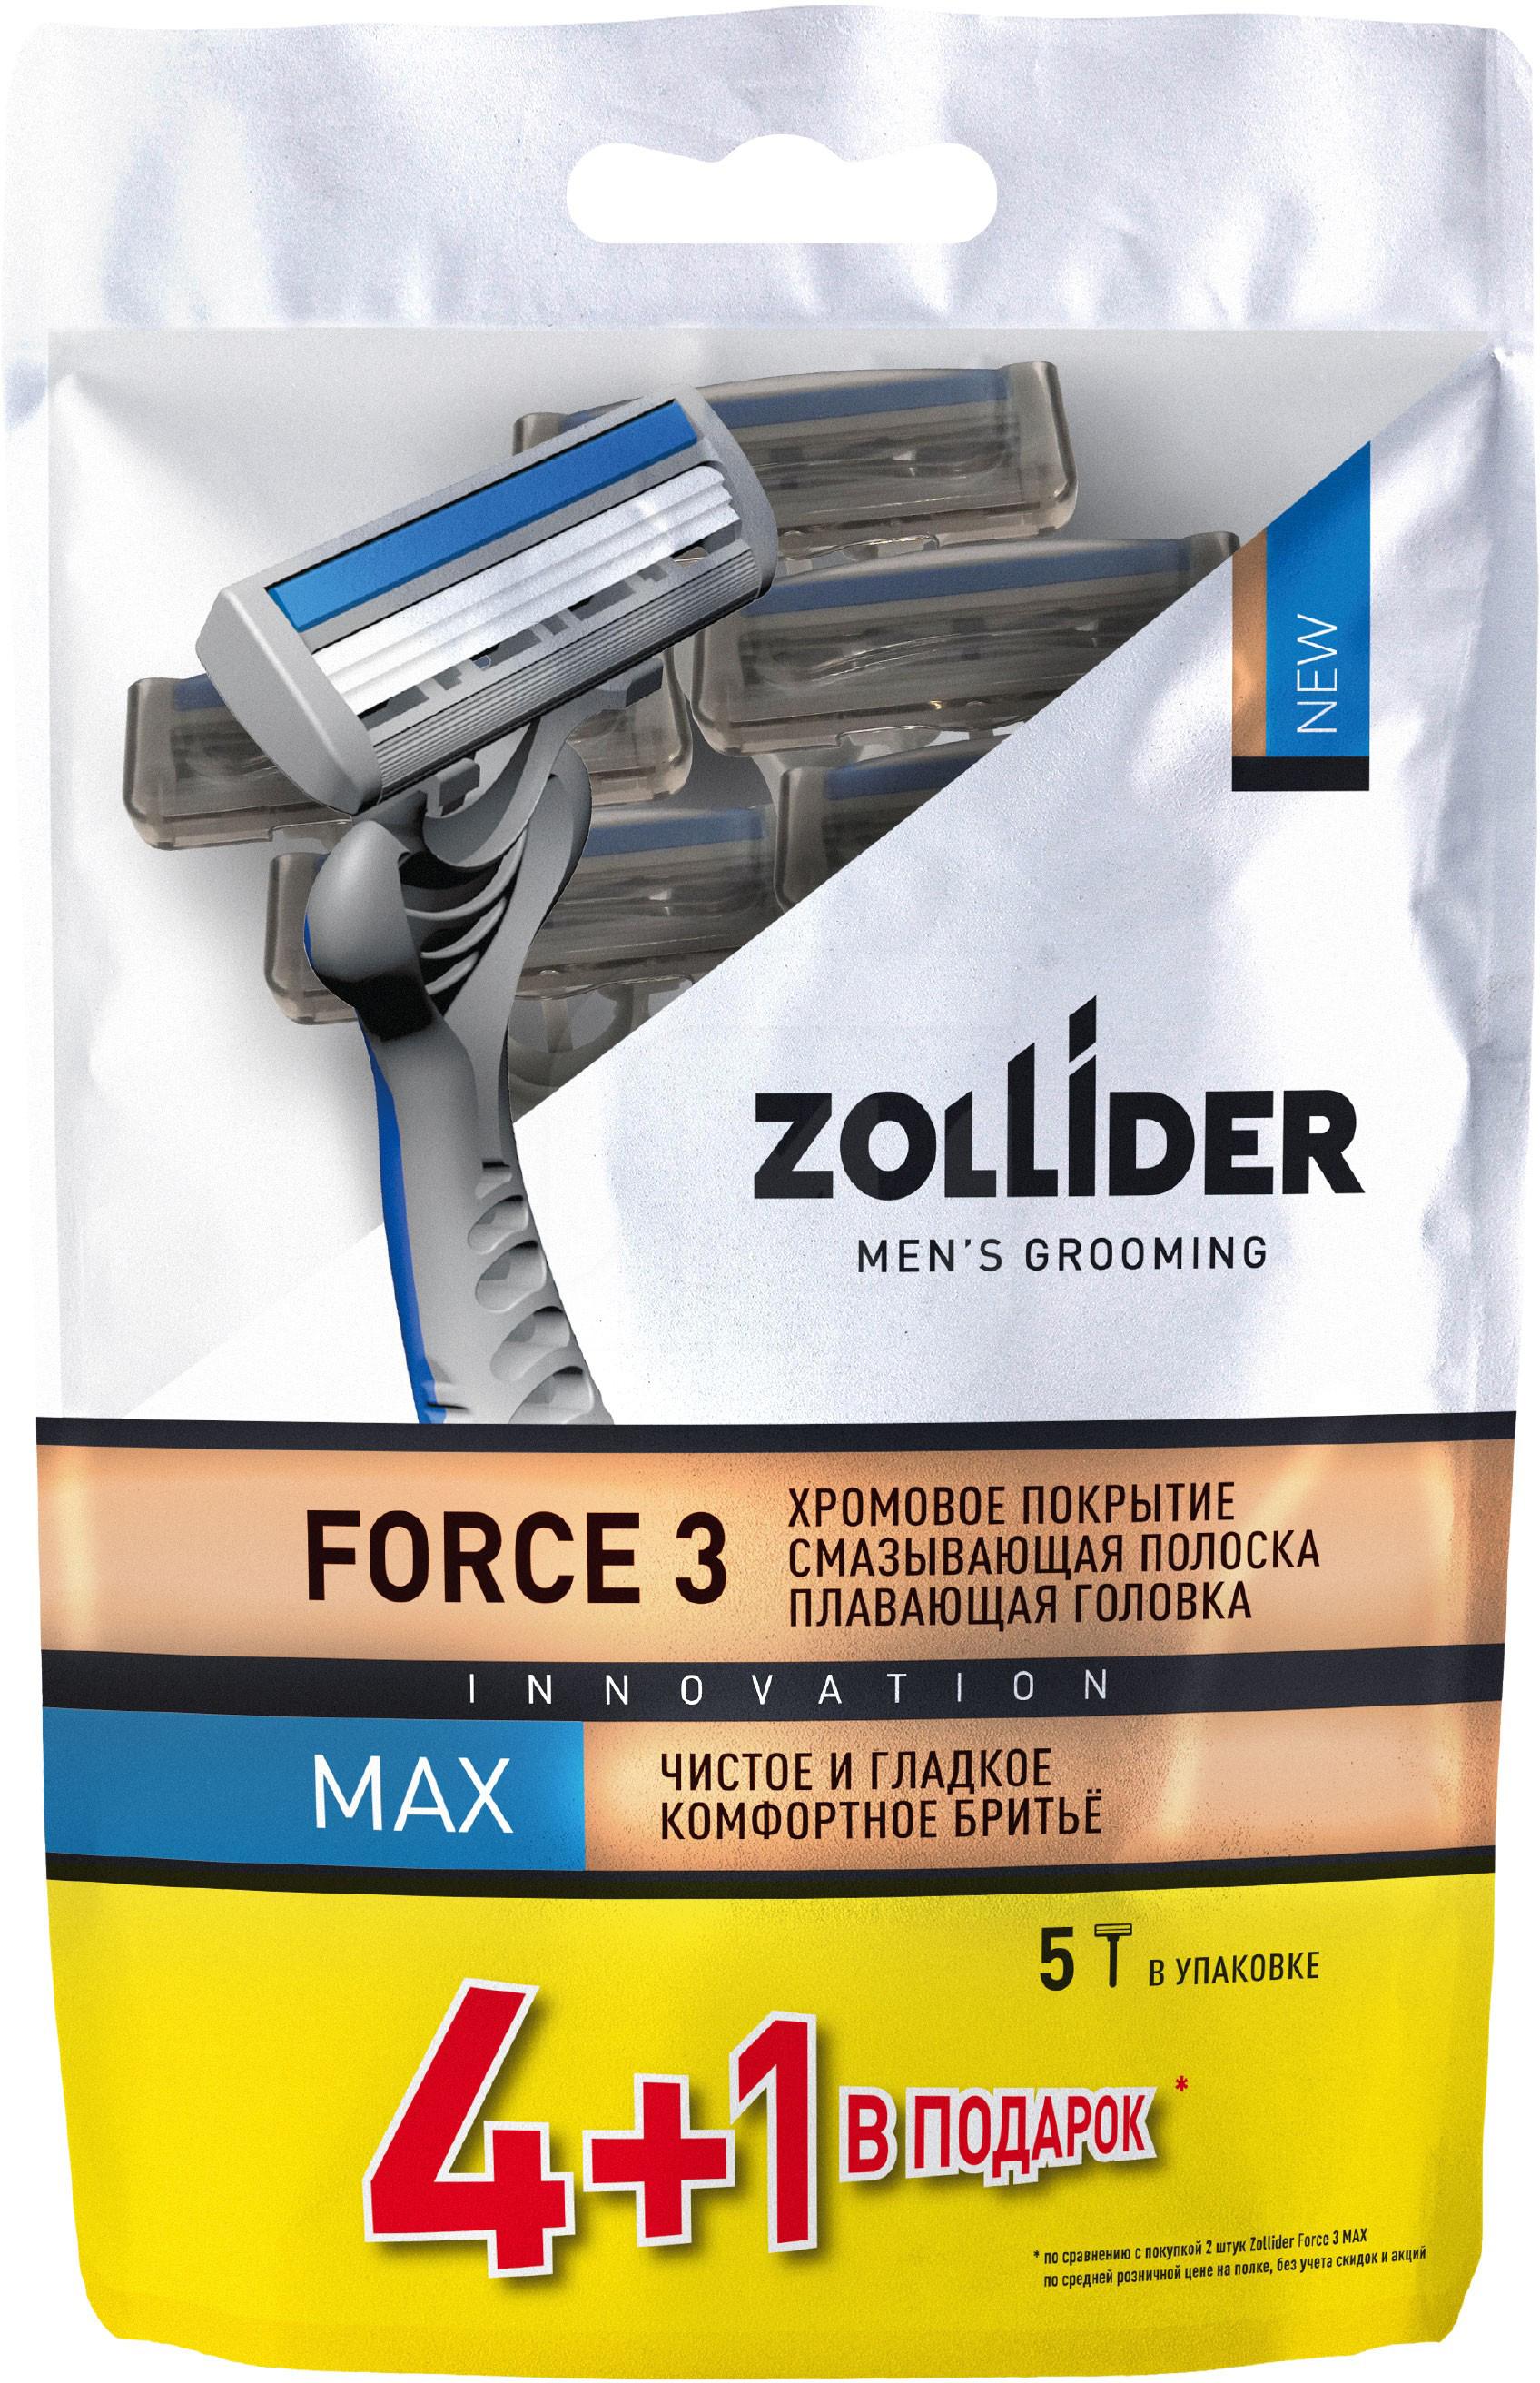 Бритвенные станки мужские Zollider Force 3 Max одноразовые с тройными лезвиями 4 + 1 шт бритвенные станки одноразовые luazon 4 лезвия увлажняющая полоска 2 шт